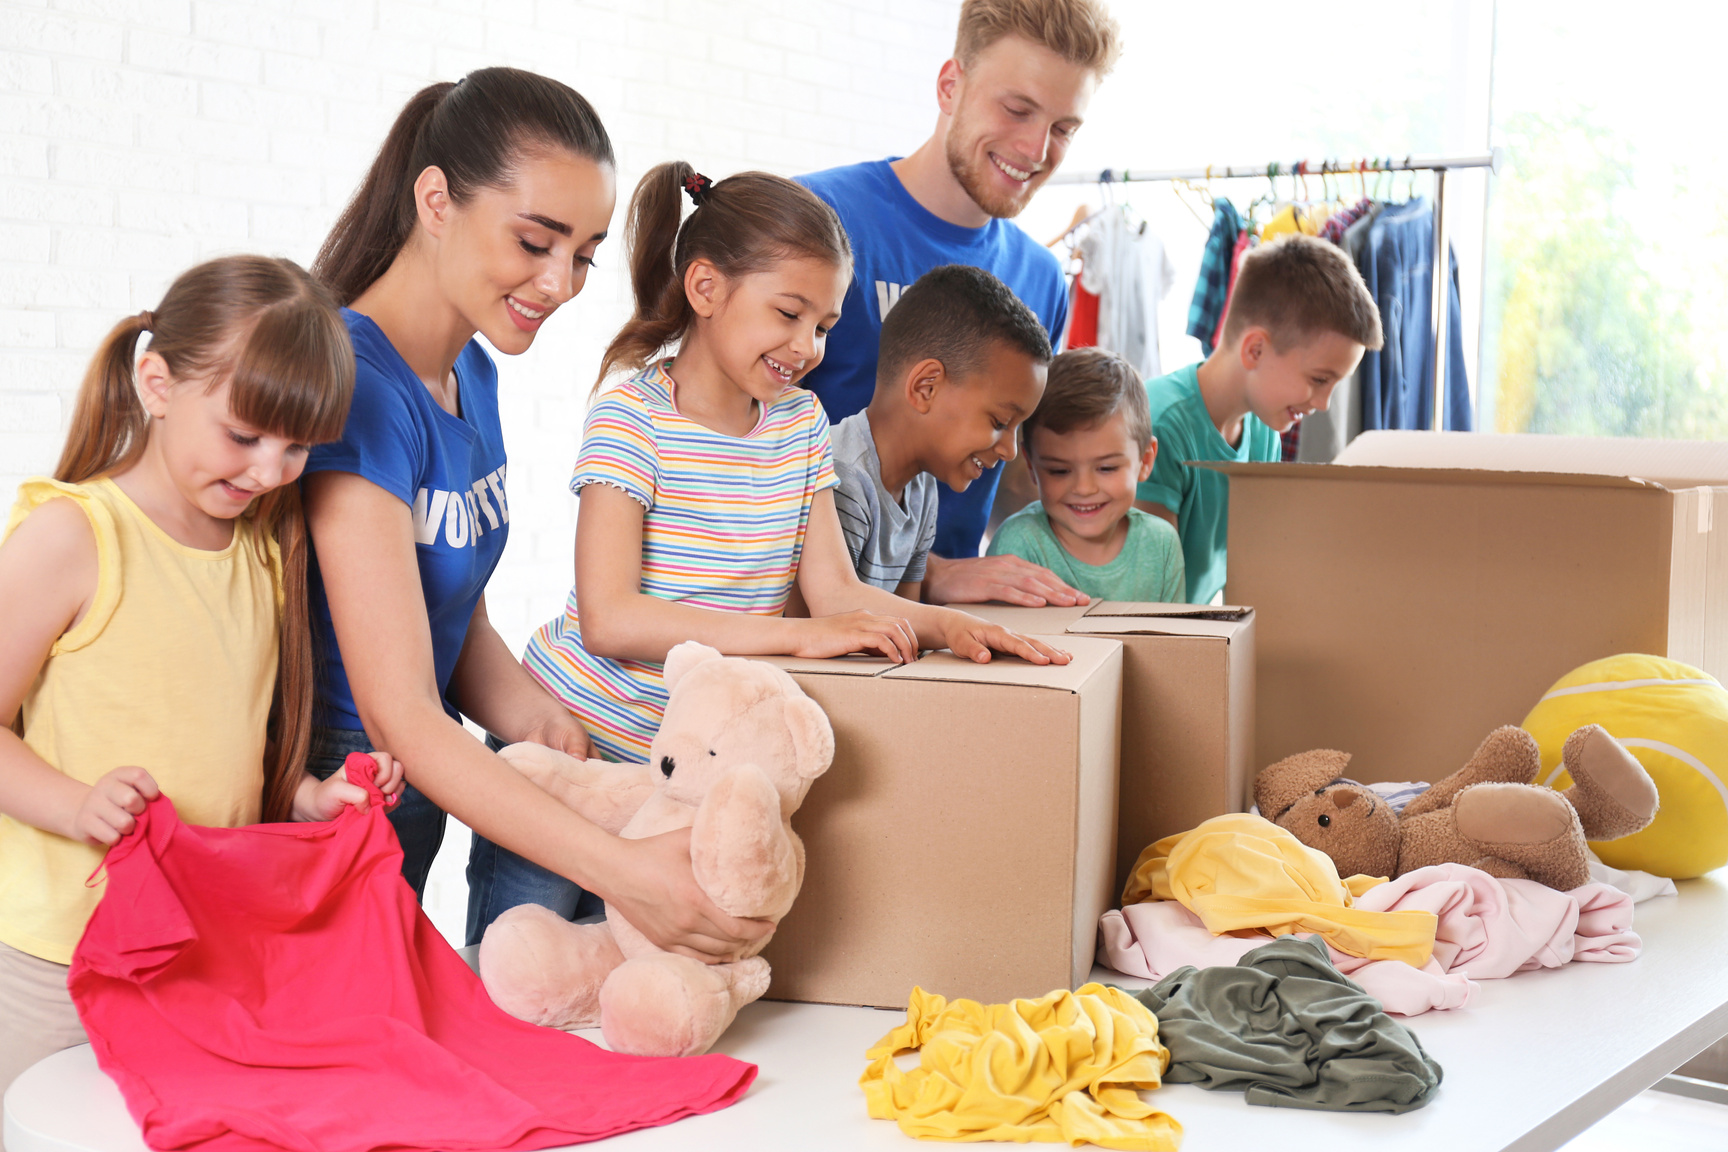 Volunteers with Children Sorting Donation Goods Indoors